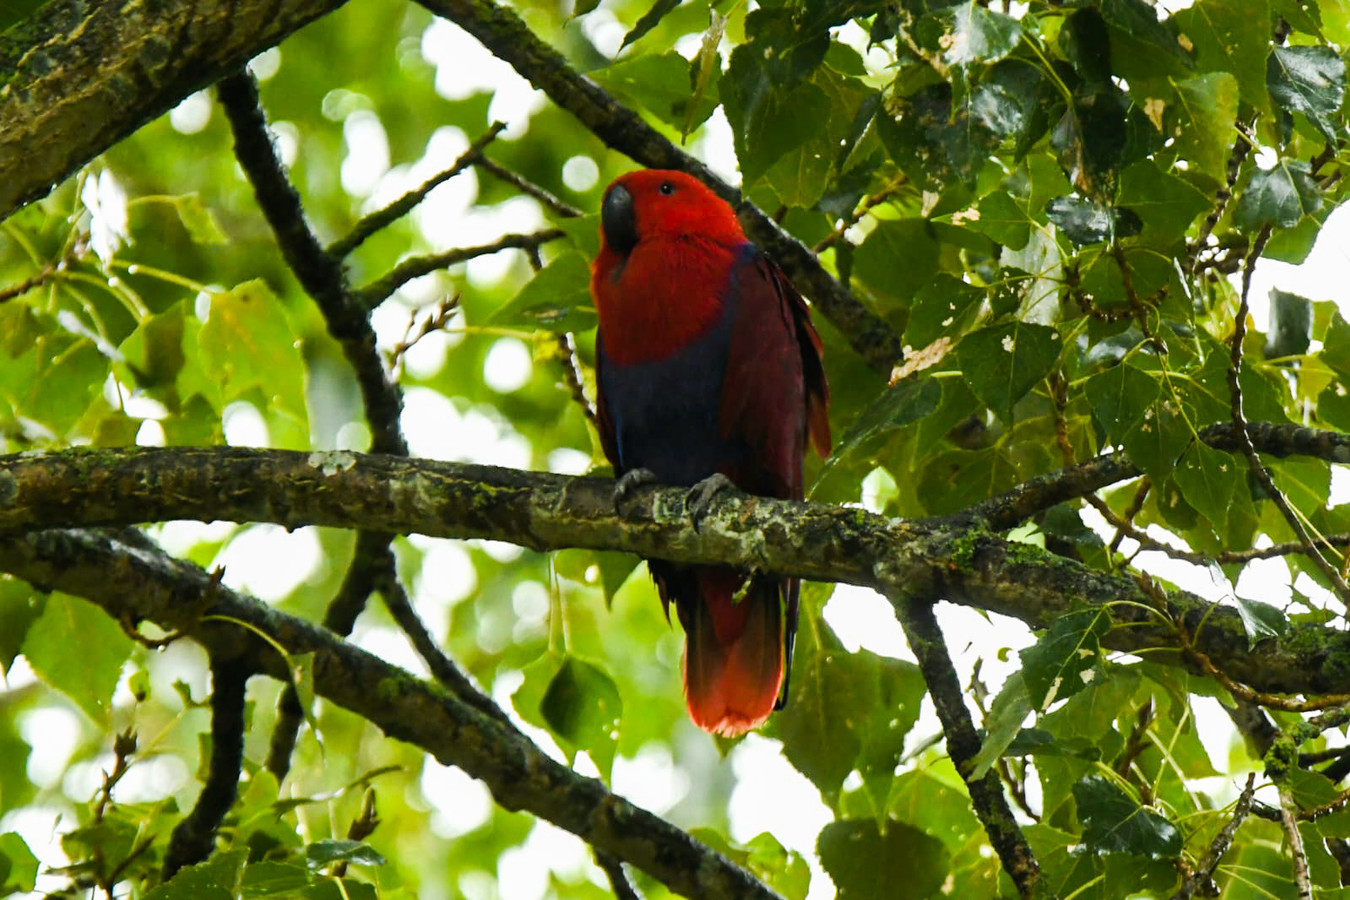 De rode papegaai zat uren na het ongeluk nog steeds in de boom.